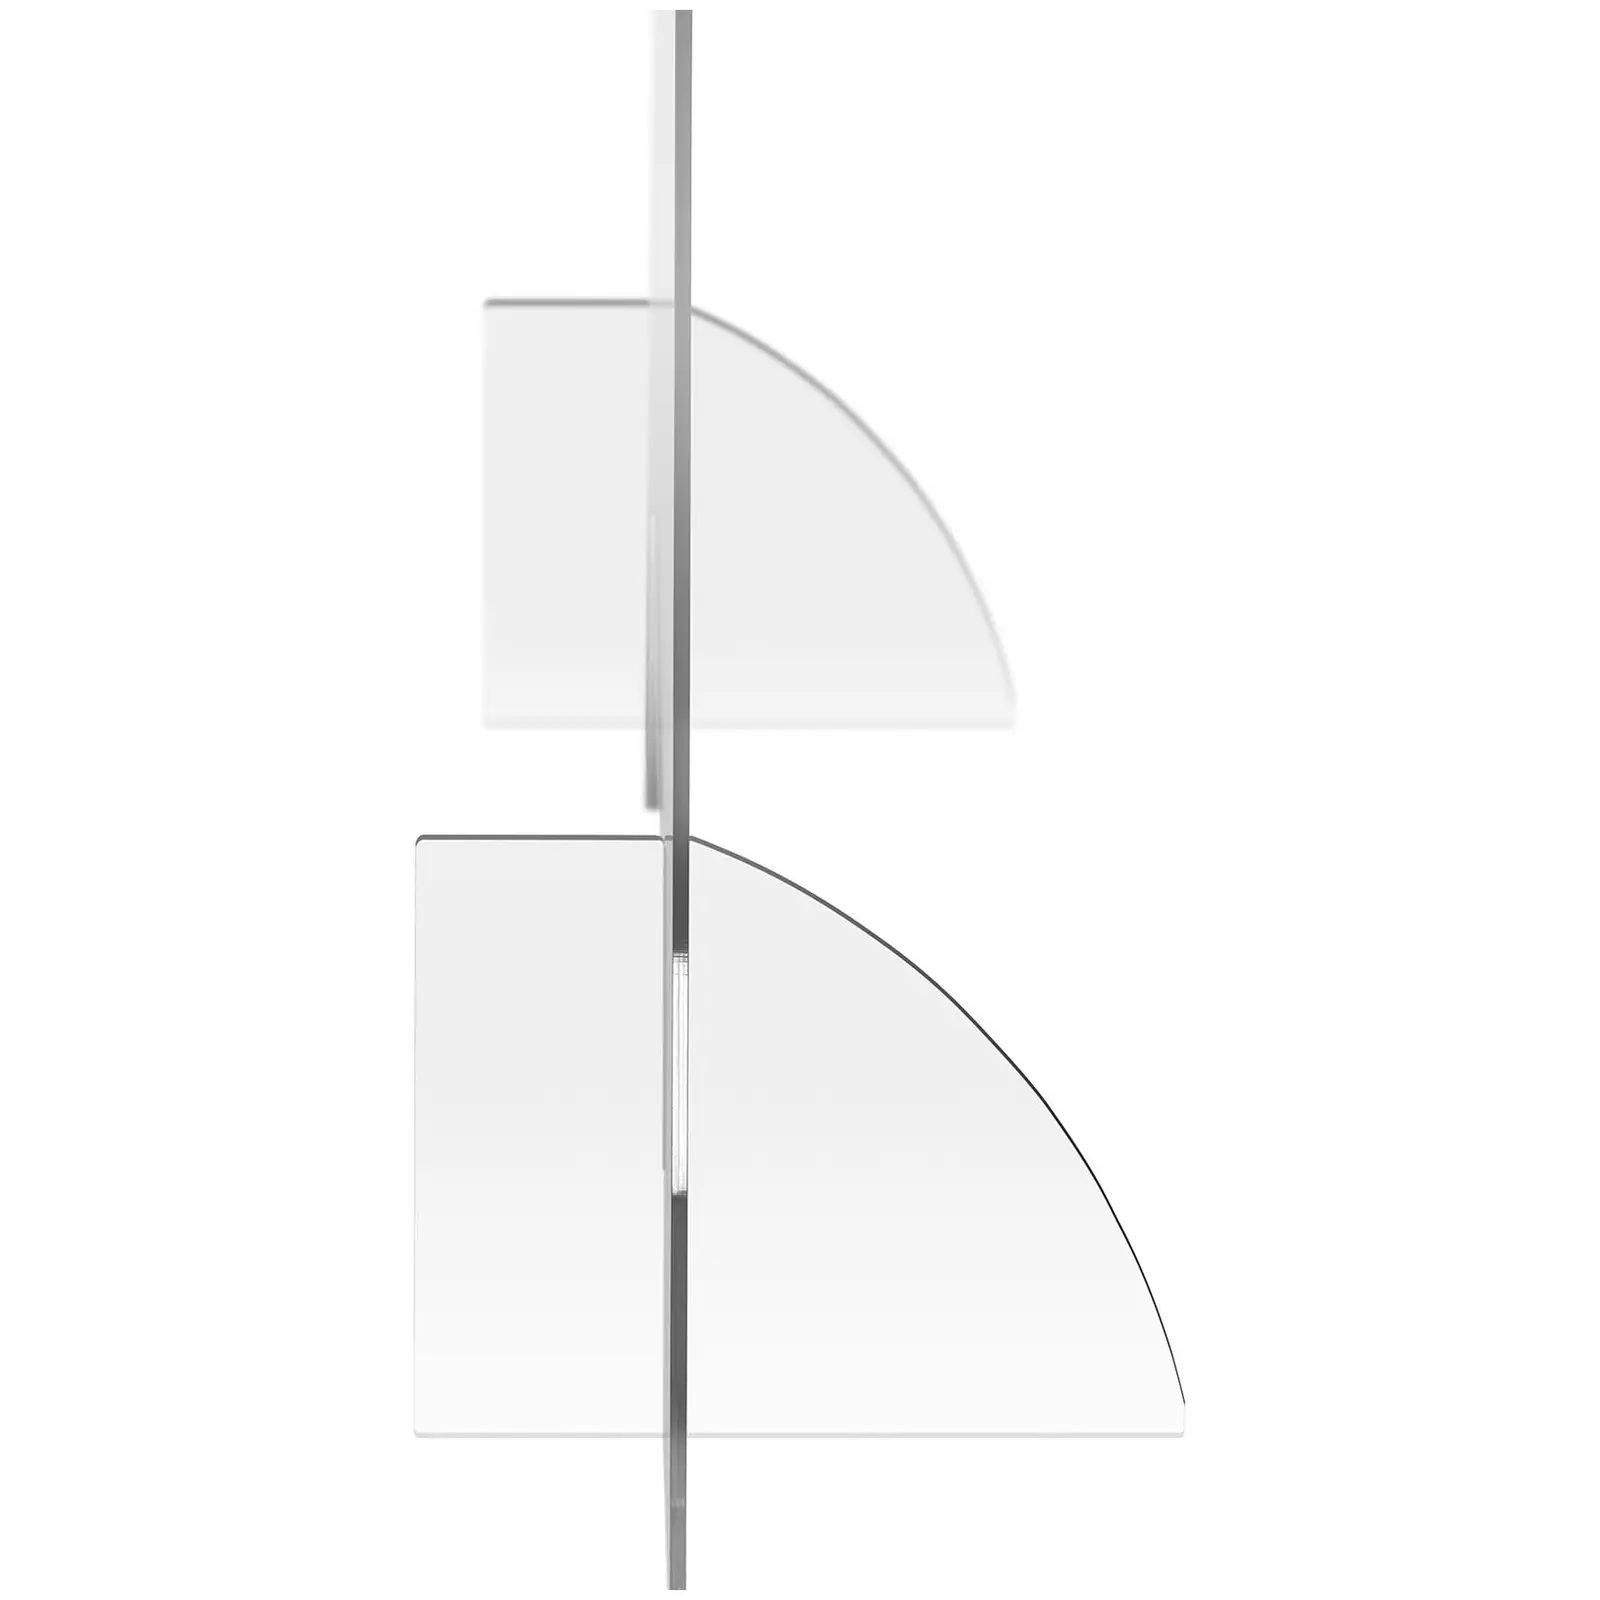 Protection plexiglass - 95 x 80 cm - Verre acrylique - Passe-documents 30 x 10 cm